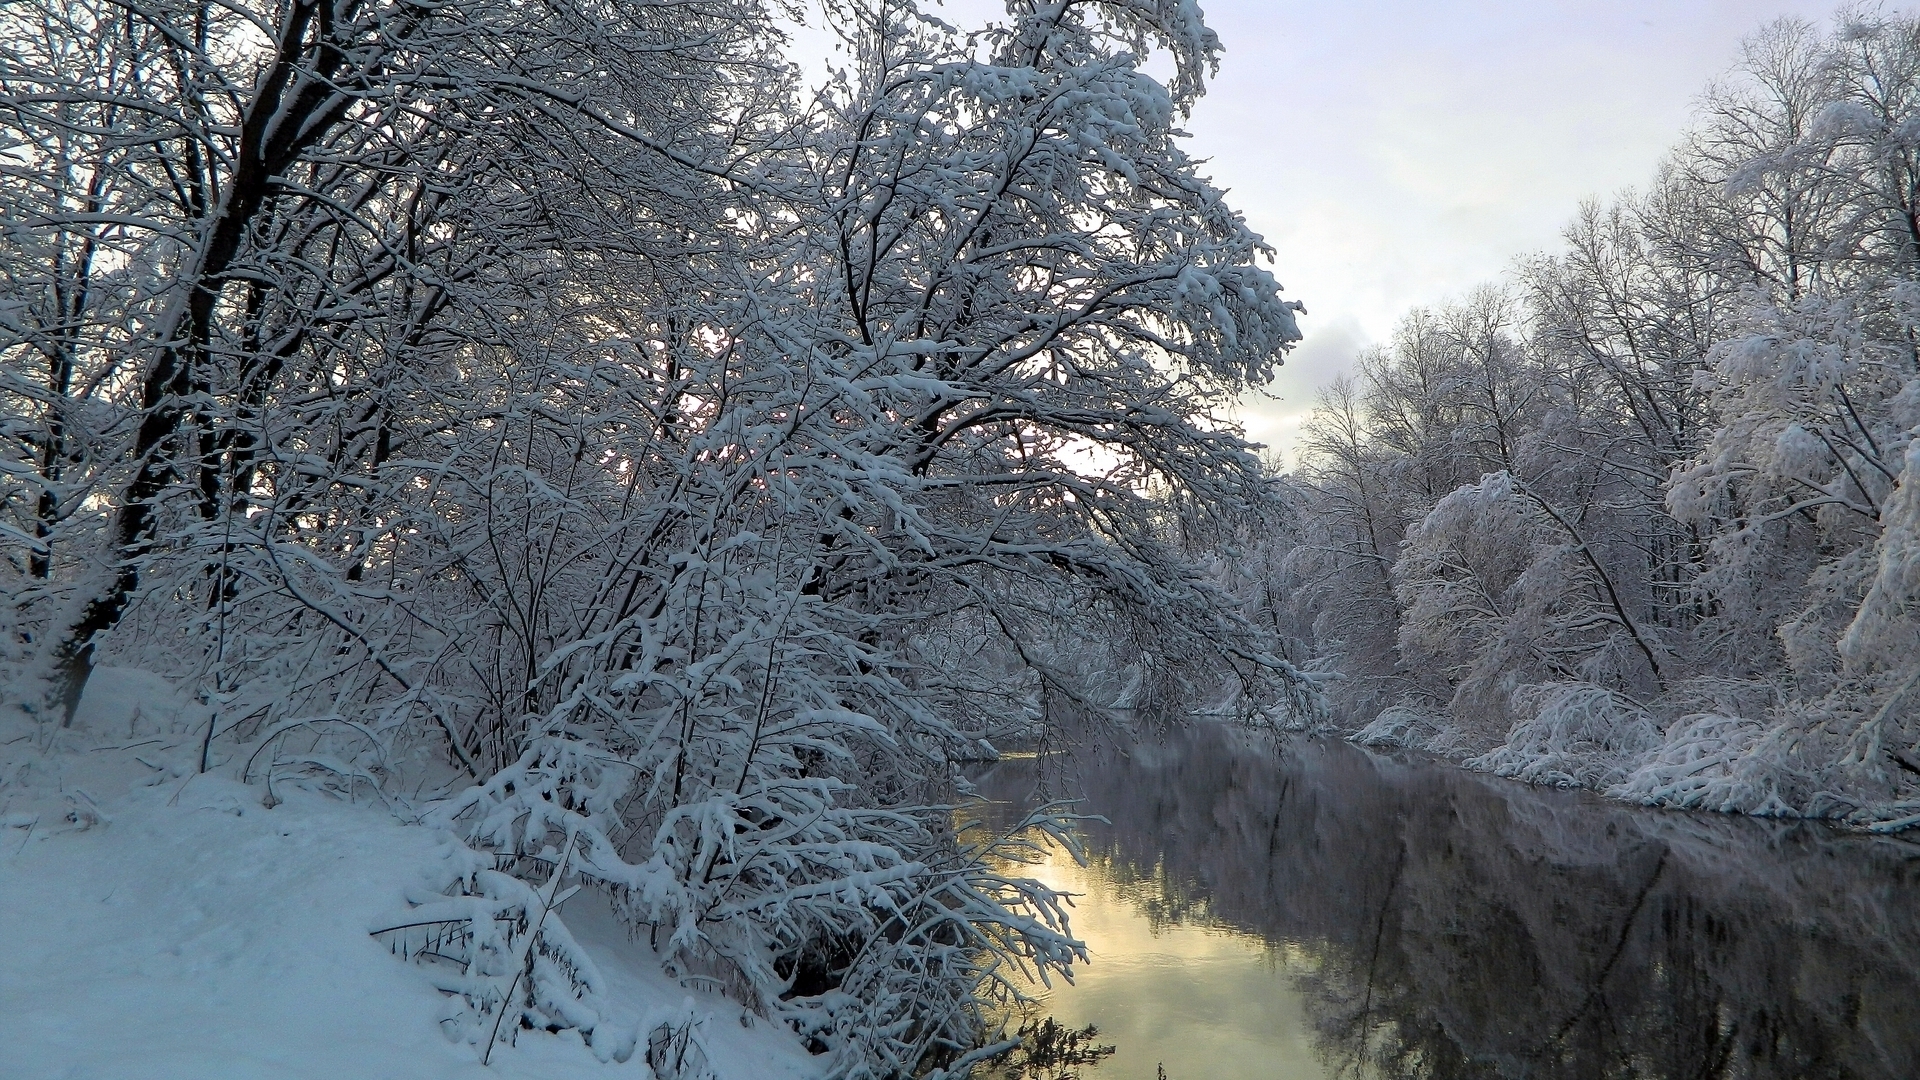 Скачать обои бесплатно Зима, Река, Снег, Отражение, Дерево, Земля/природа картинка на рабочий стол ПК